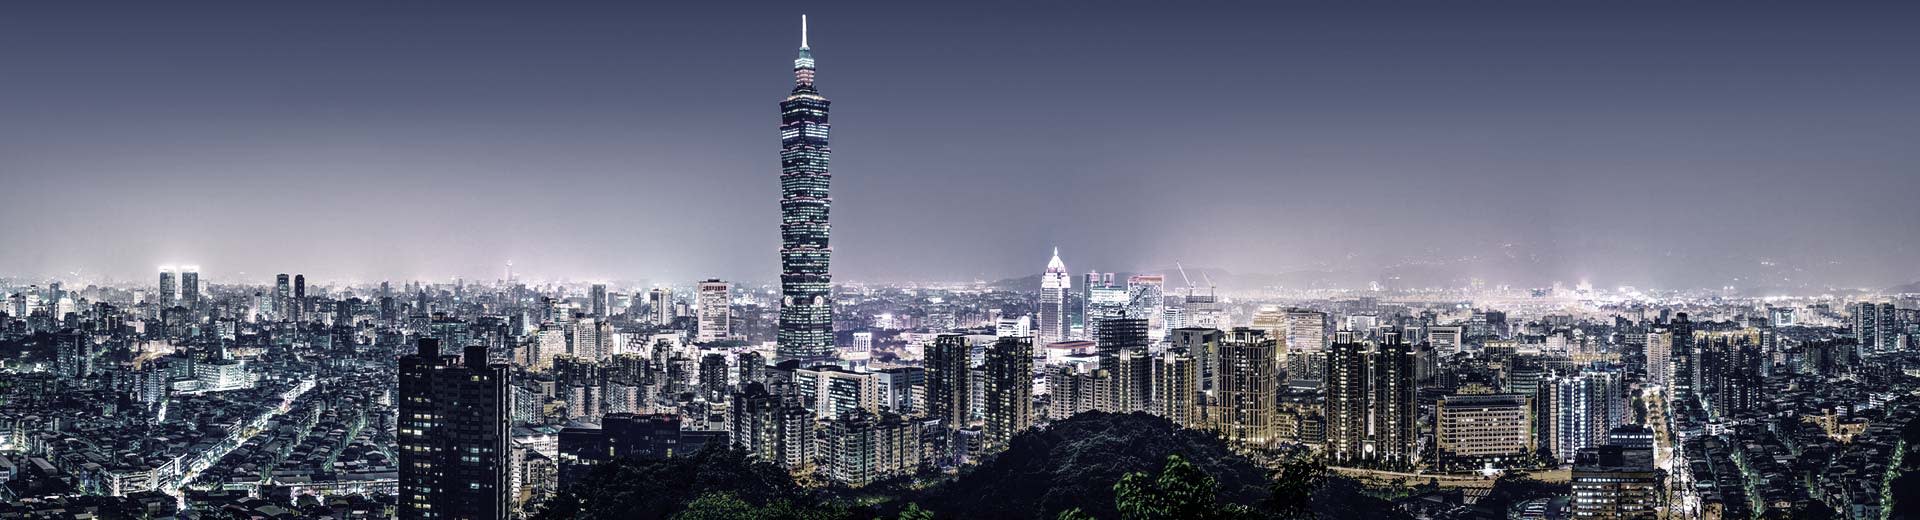 El brillante paisaje urbano de Taipei, con innumerables rascacielos y complejos de apartamentos de gran altura hasta donde alcanza la vista.